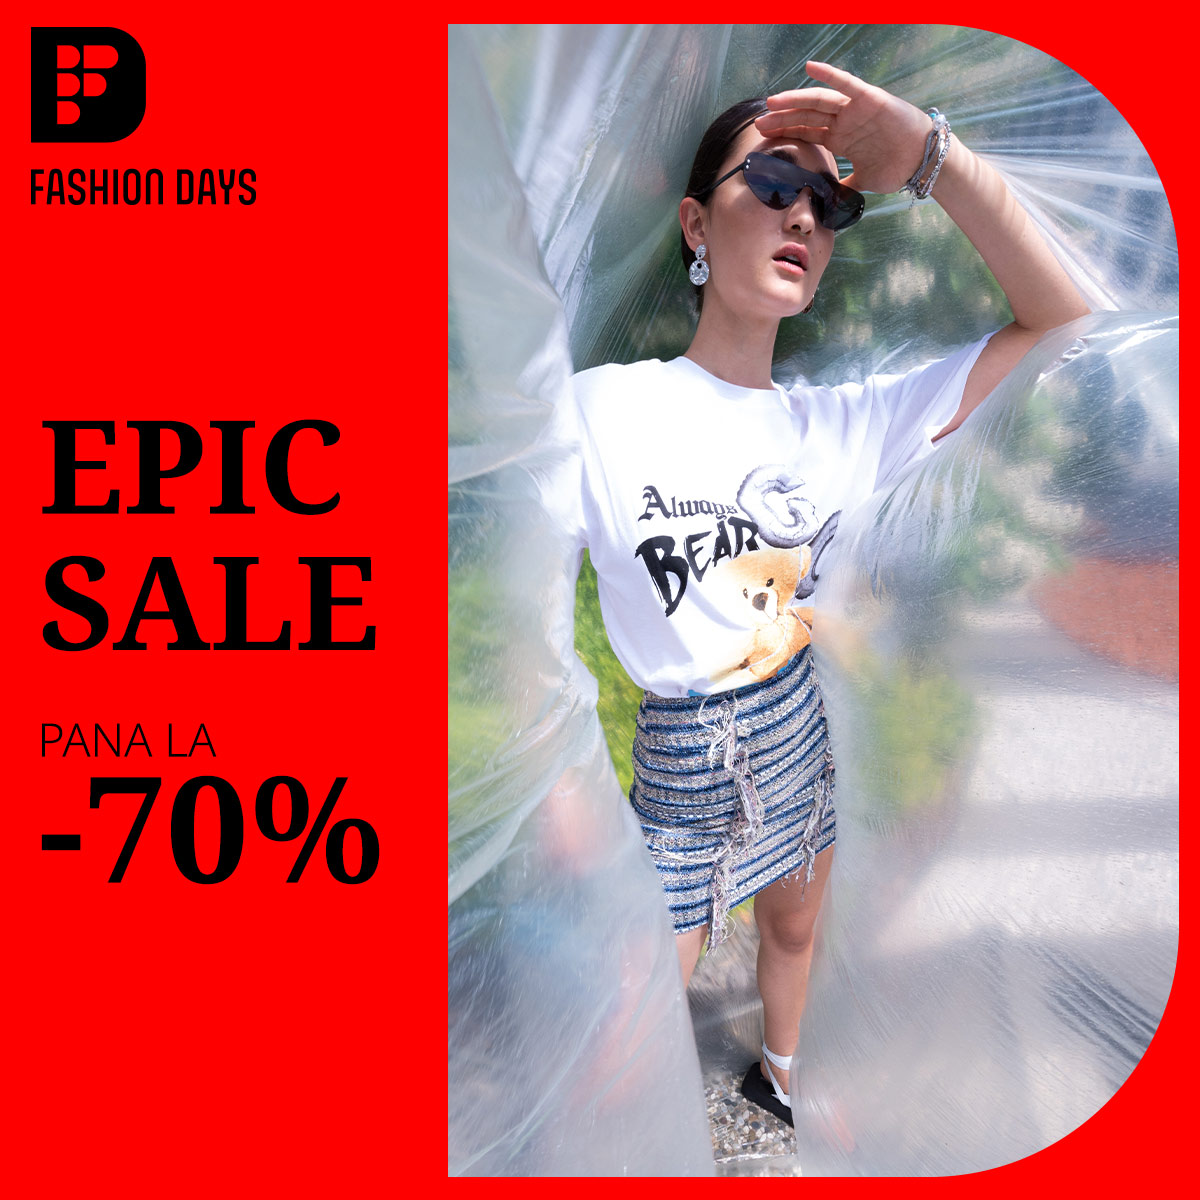 Epic Sale - pana la -70% la articolele pentru femei